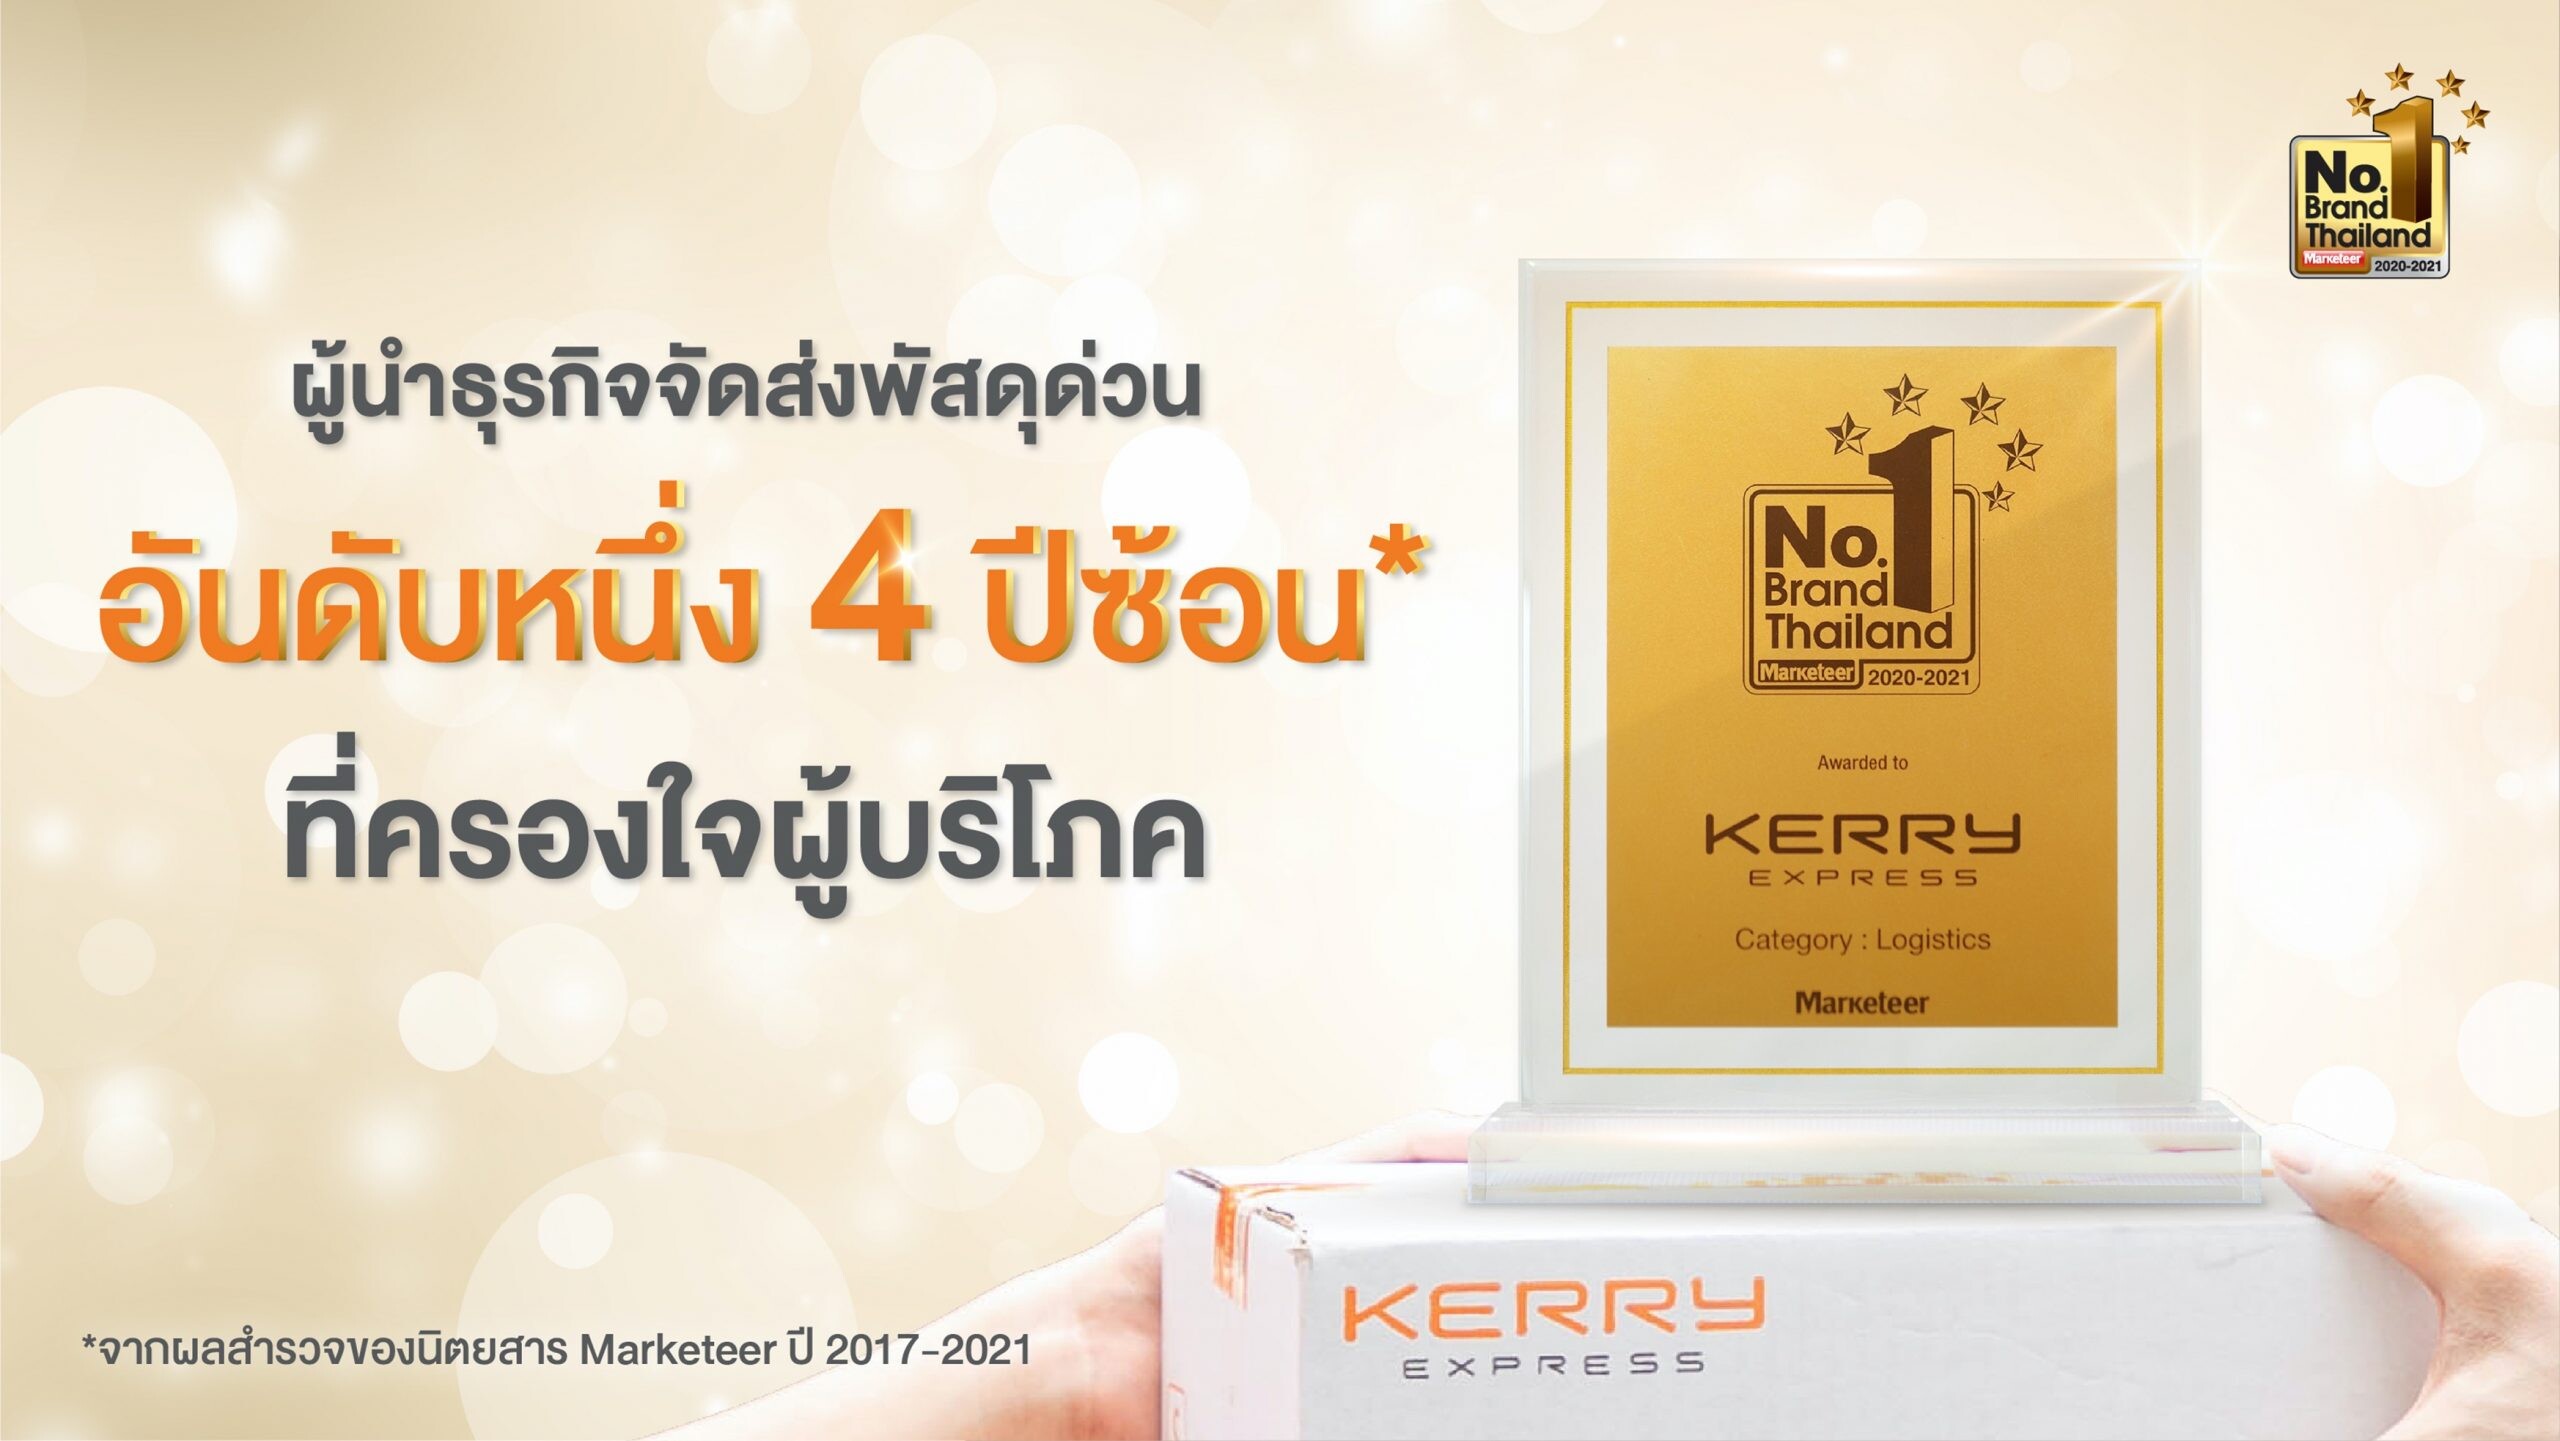 "เคอรี่" ผงาดรับรางวัล No.1 Brand Thailand 4 ปีซ้อน ตอกย้ำความเหนือระดับทุกด้าน ชนะทุกภาคทั่วไทย ชูจุดแข็ง "ถูกและดี"